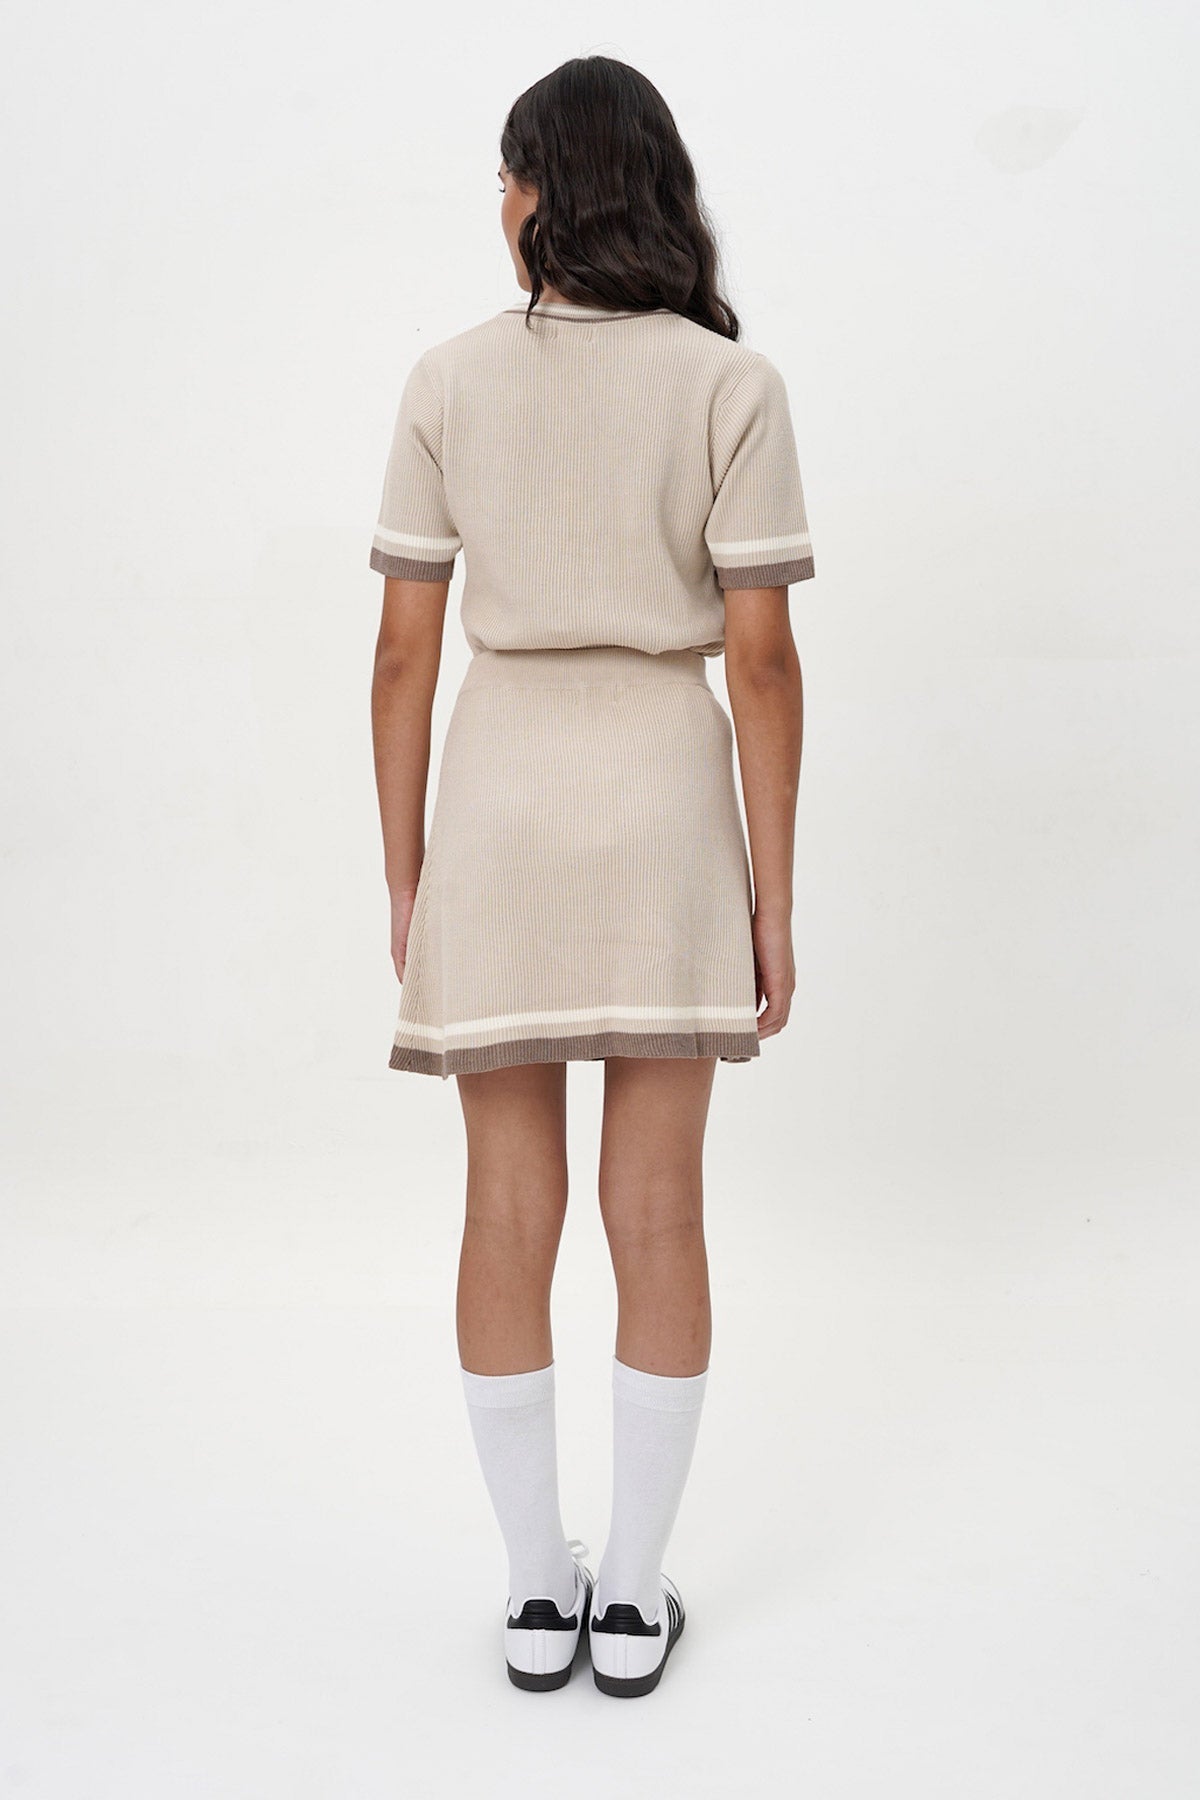 Kyle Knit Skirt in Cream